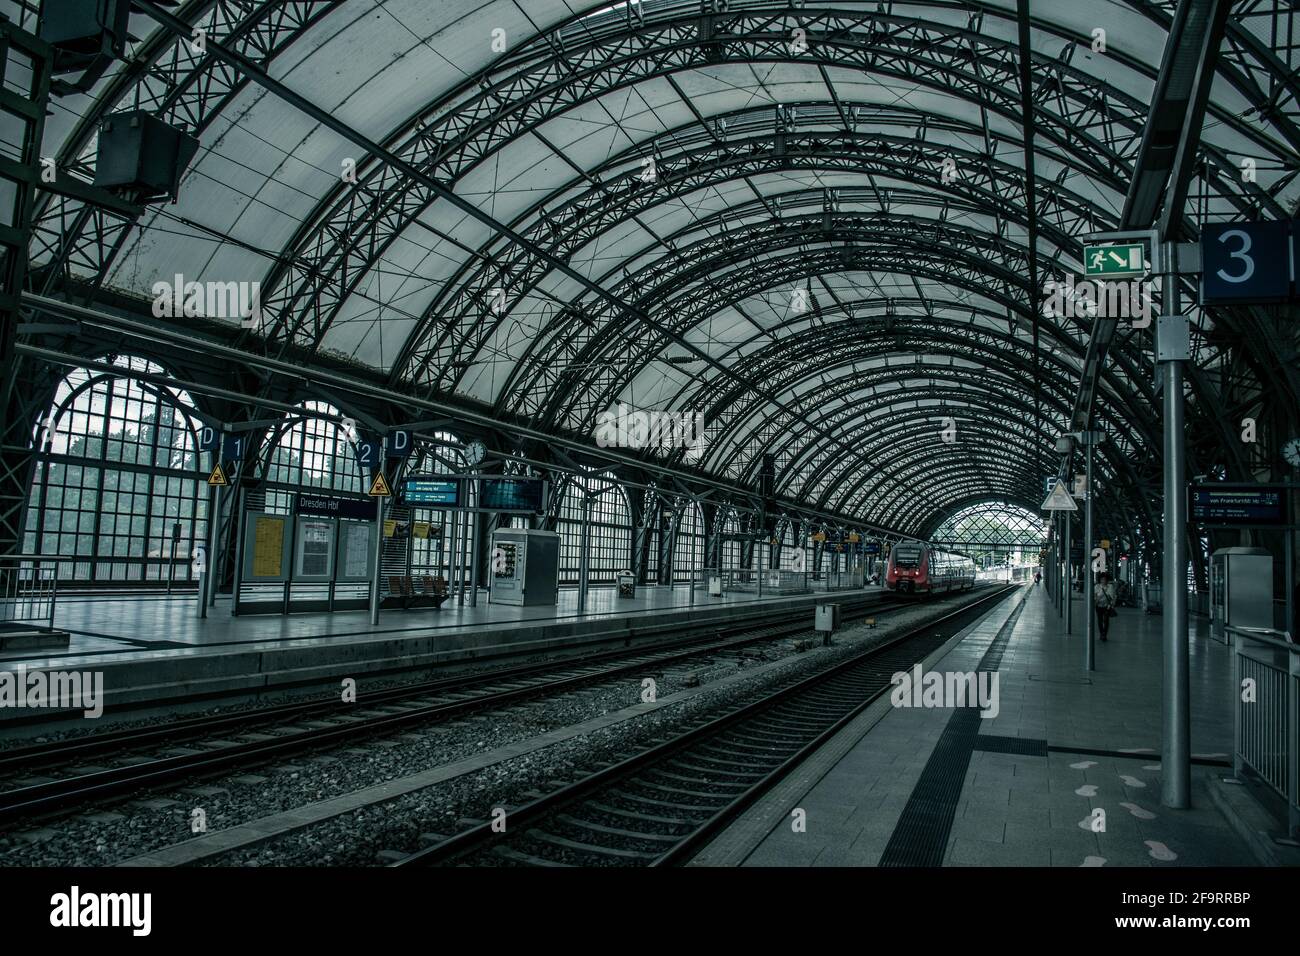 17 mai 2019 Dresde, Allemagne - intérieur de Dresde Hauptbahnhof. Trains à la gare centrale de Dresde. Banque D'Images